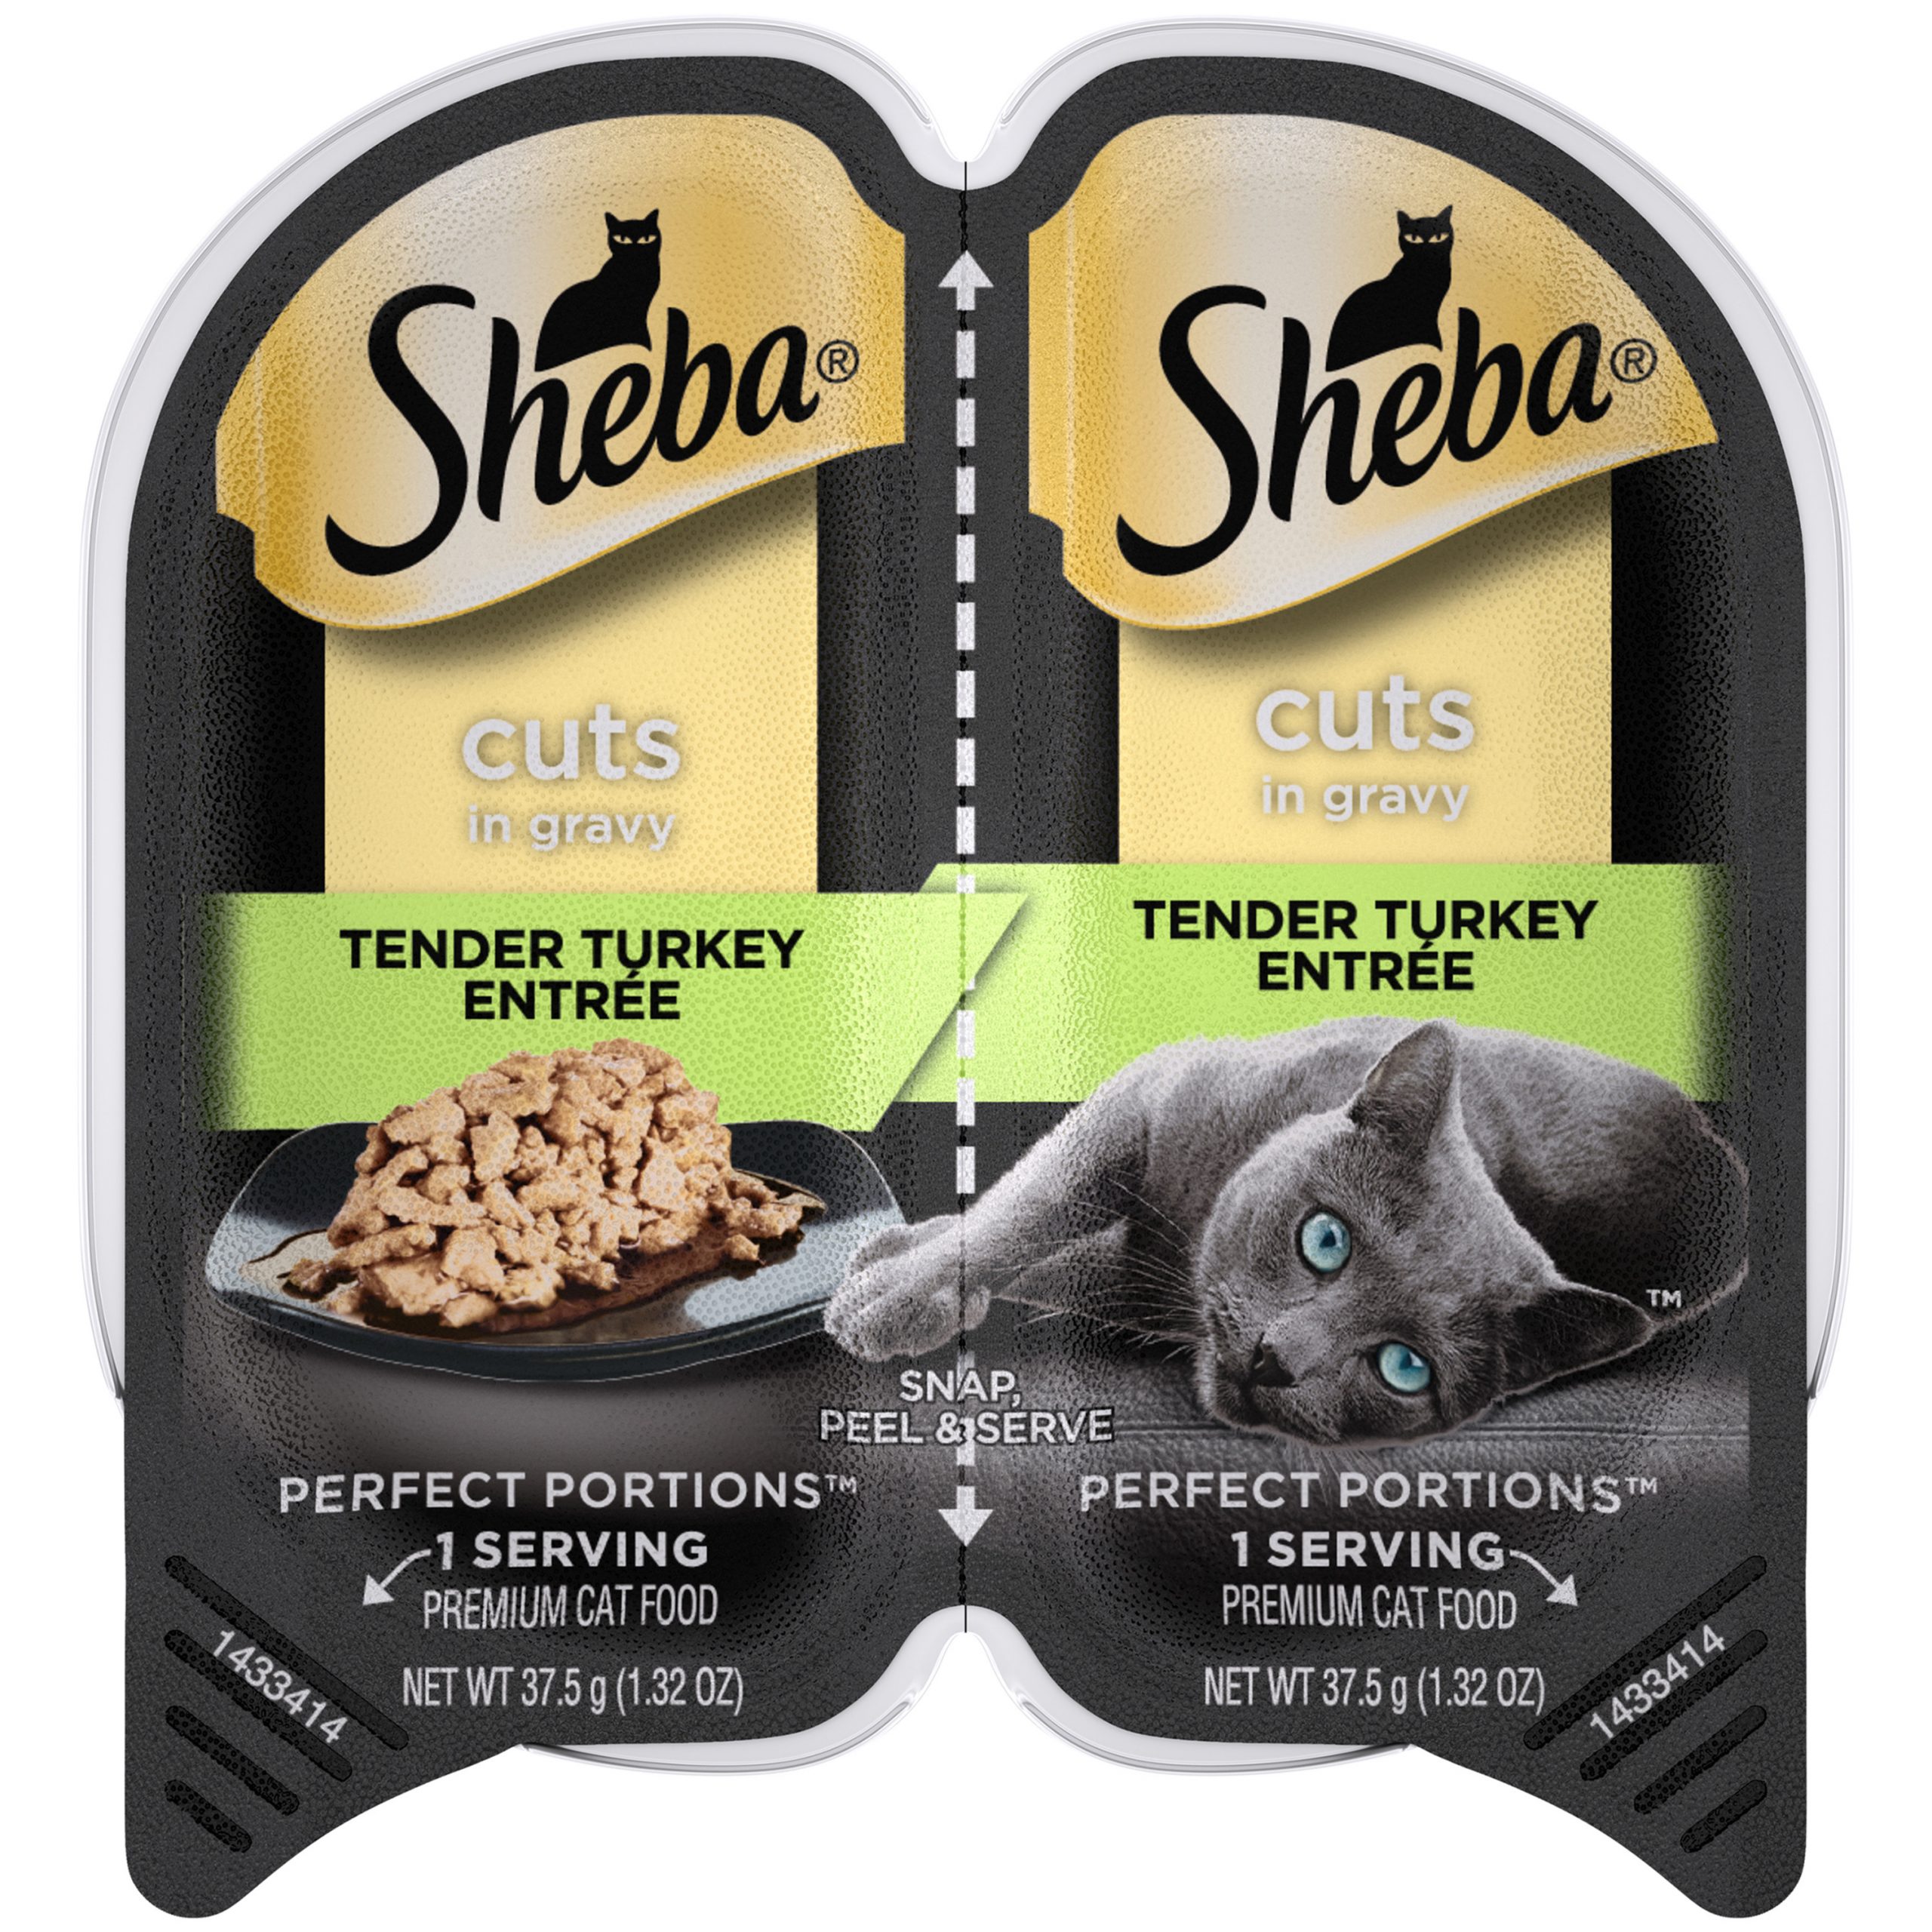 SHEBA Wet Cat Food Cuts in Gravy, Tender Turkey Entree ...